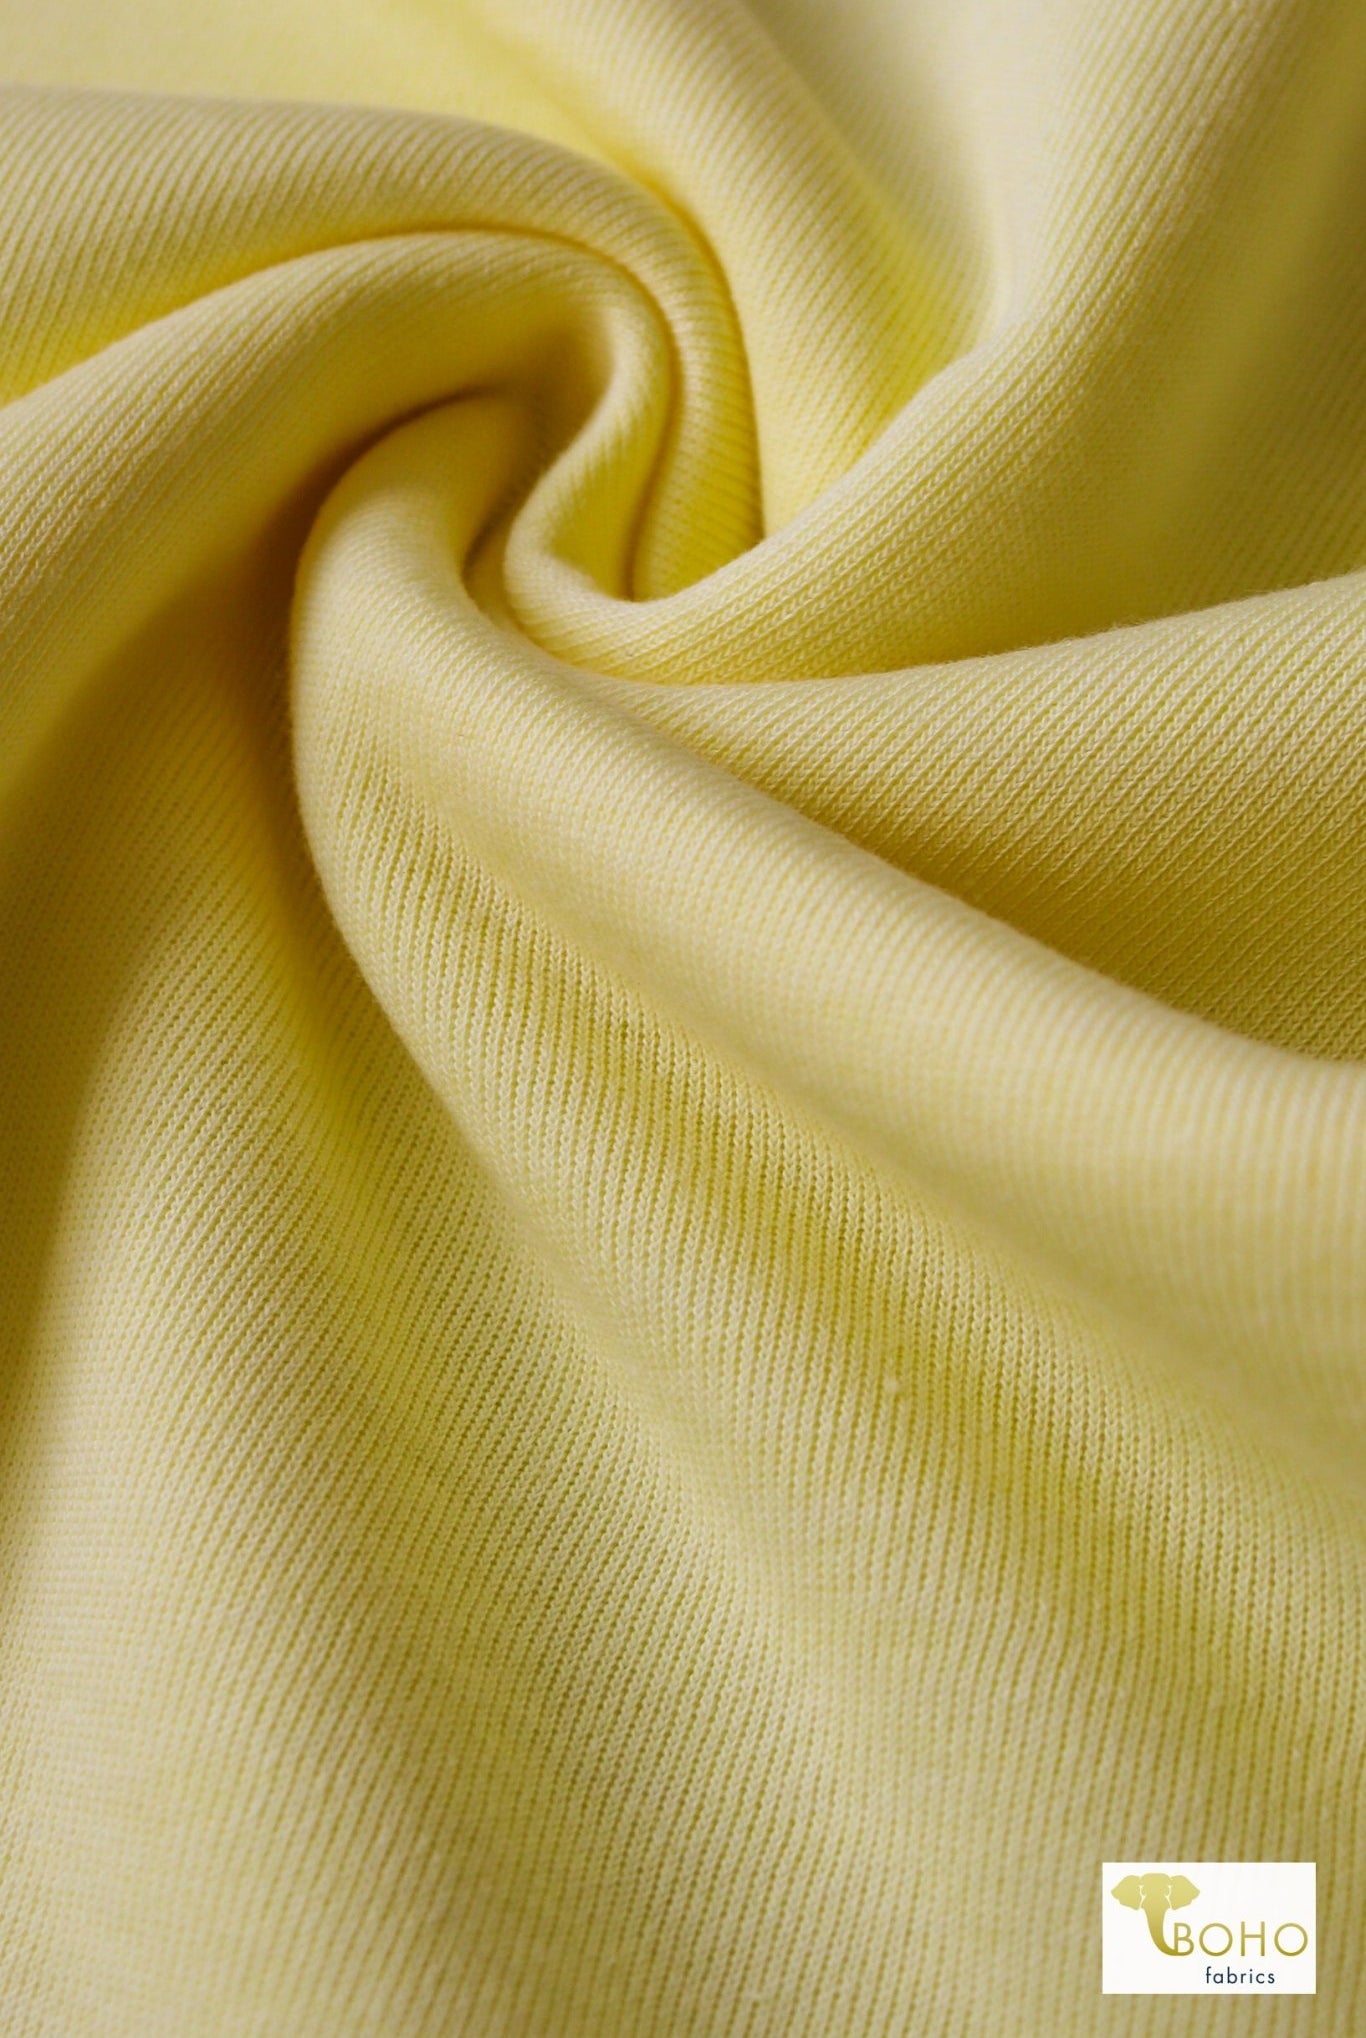 Lemonade Yellow, Sweatshirt Fleece. - Boho Fabrics